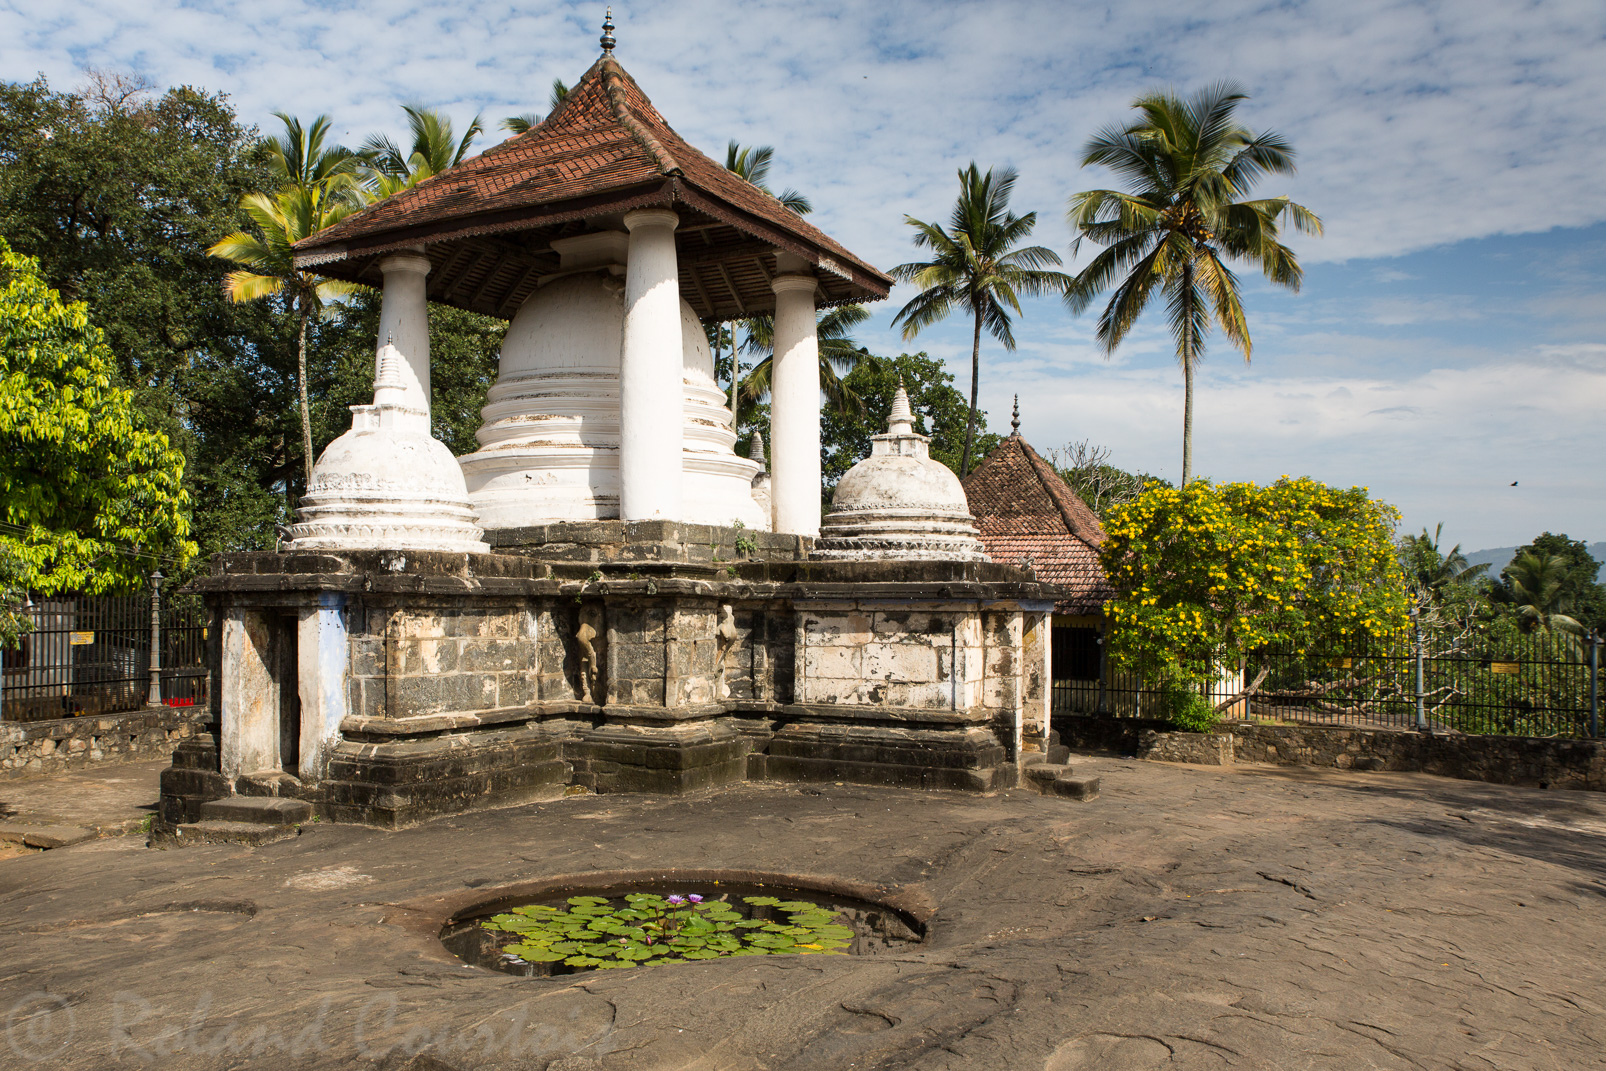 Le temple Gadaladeniya a été érigé sur un escarpement rocheux parsemé de petits bassins.